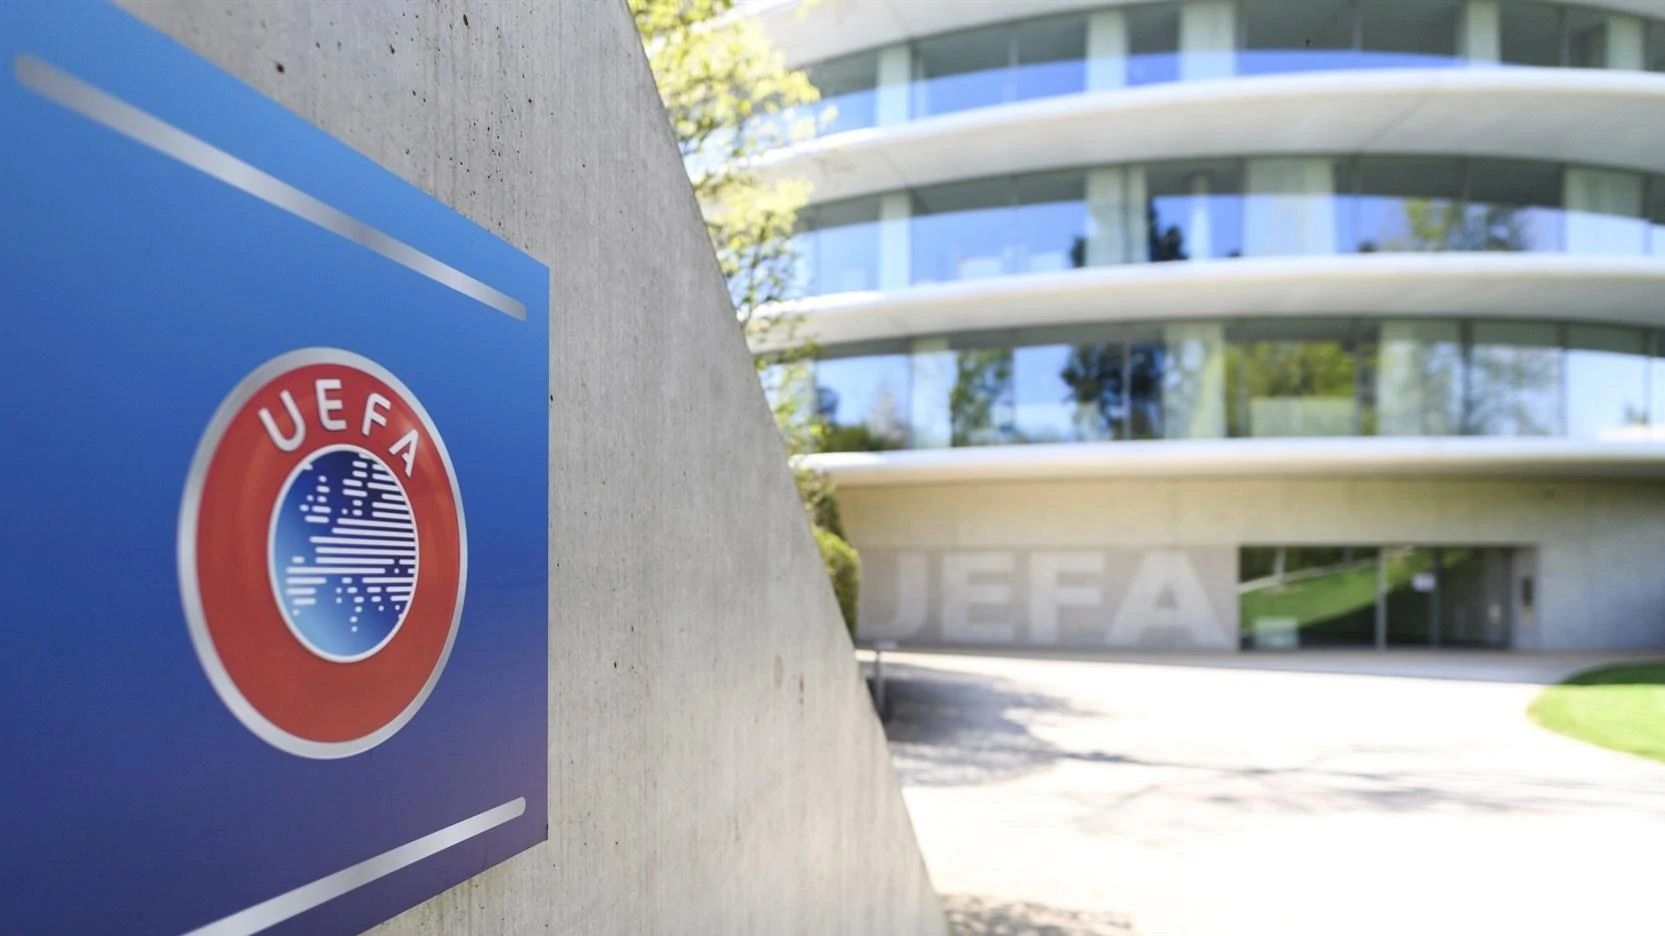 36 quốc gia sẽ có đại diện tham dự vòng bảng của các giải đấu cấp câu lạc bộ UEFA mùa này!